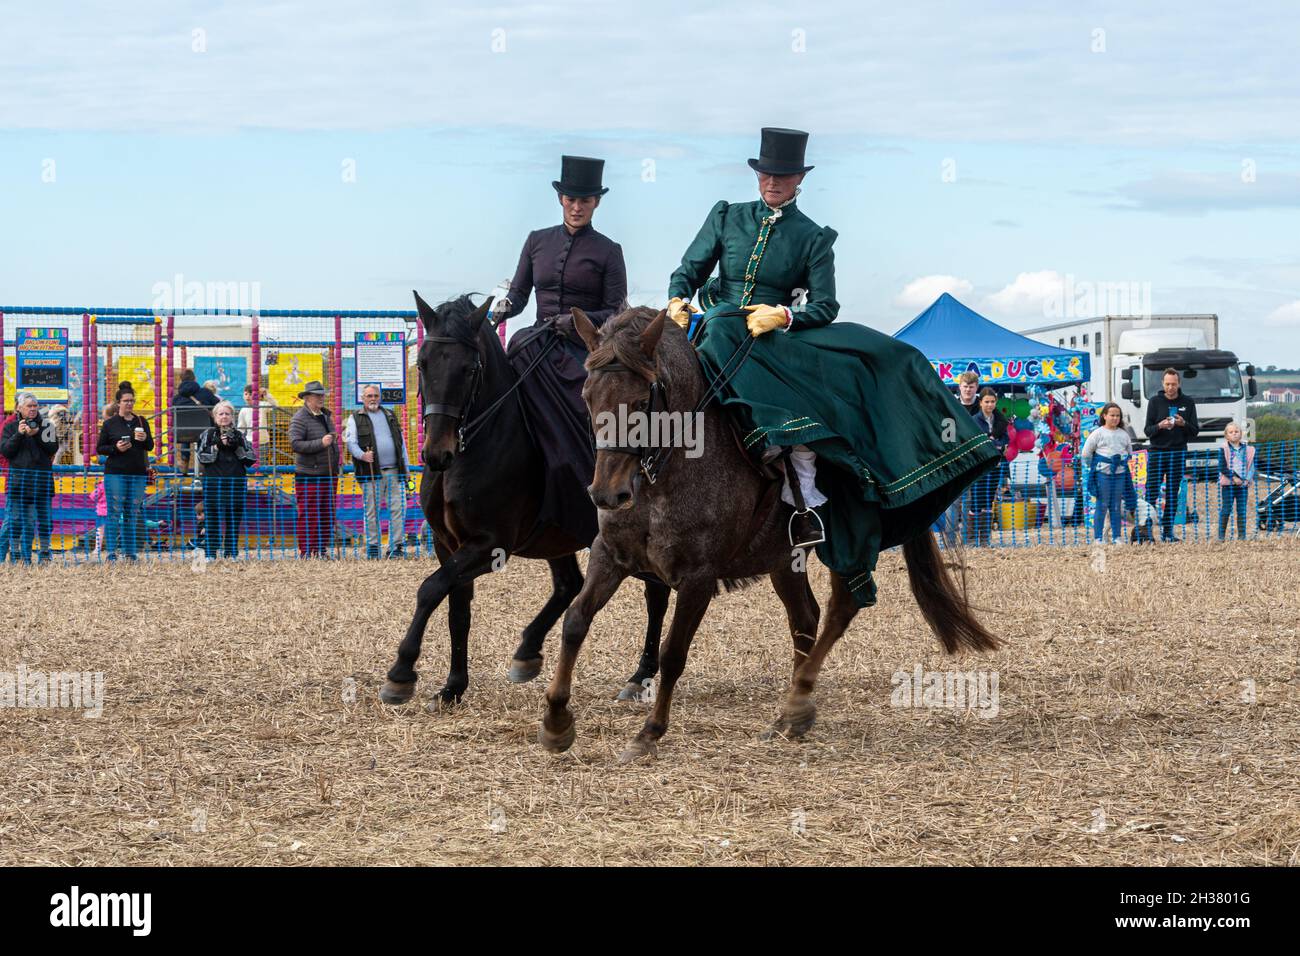 Dos mujeres en traje de época haciendo una exhibición de equitación en silla de montar a caballo en un evento de caballos, Reino Unido Foto de stock